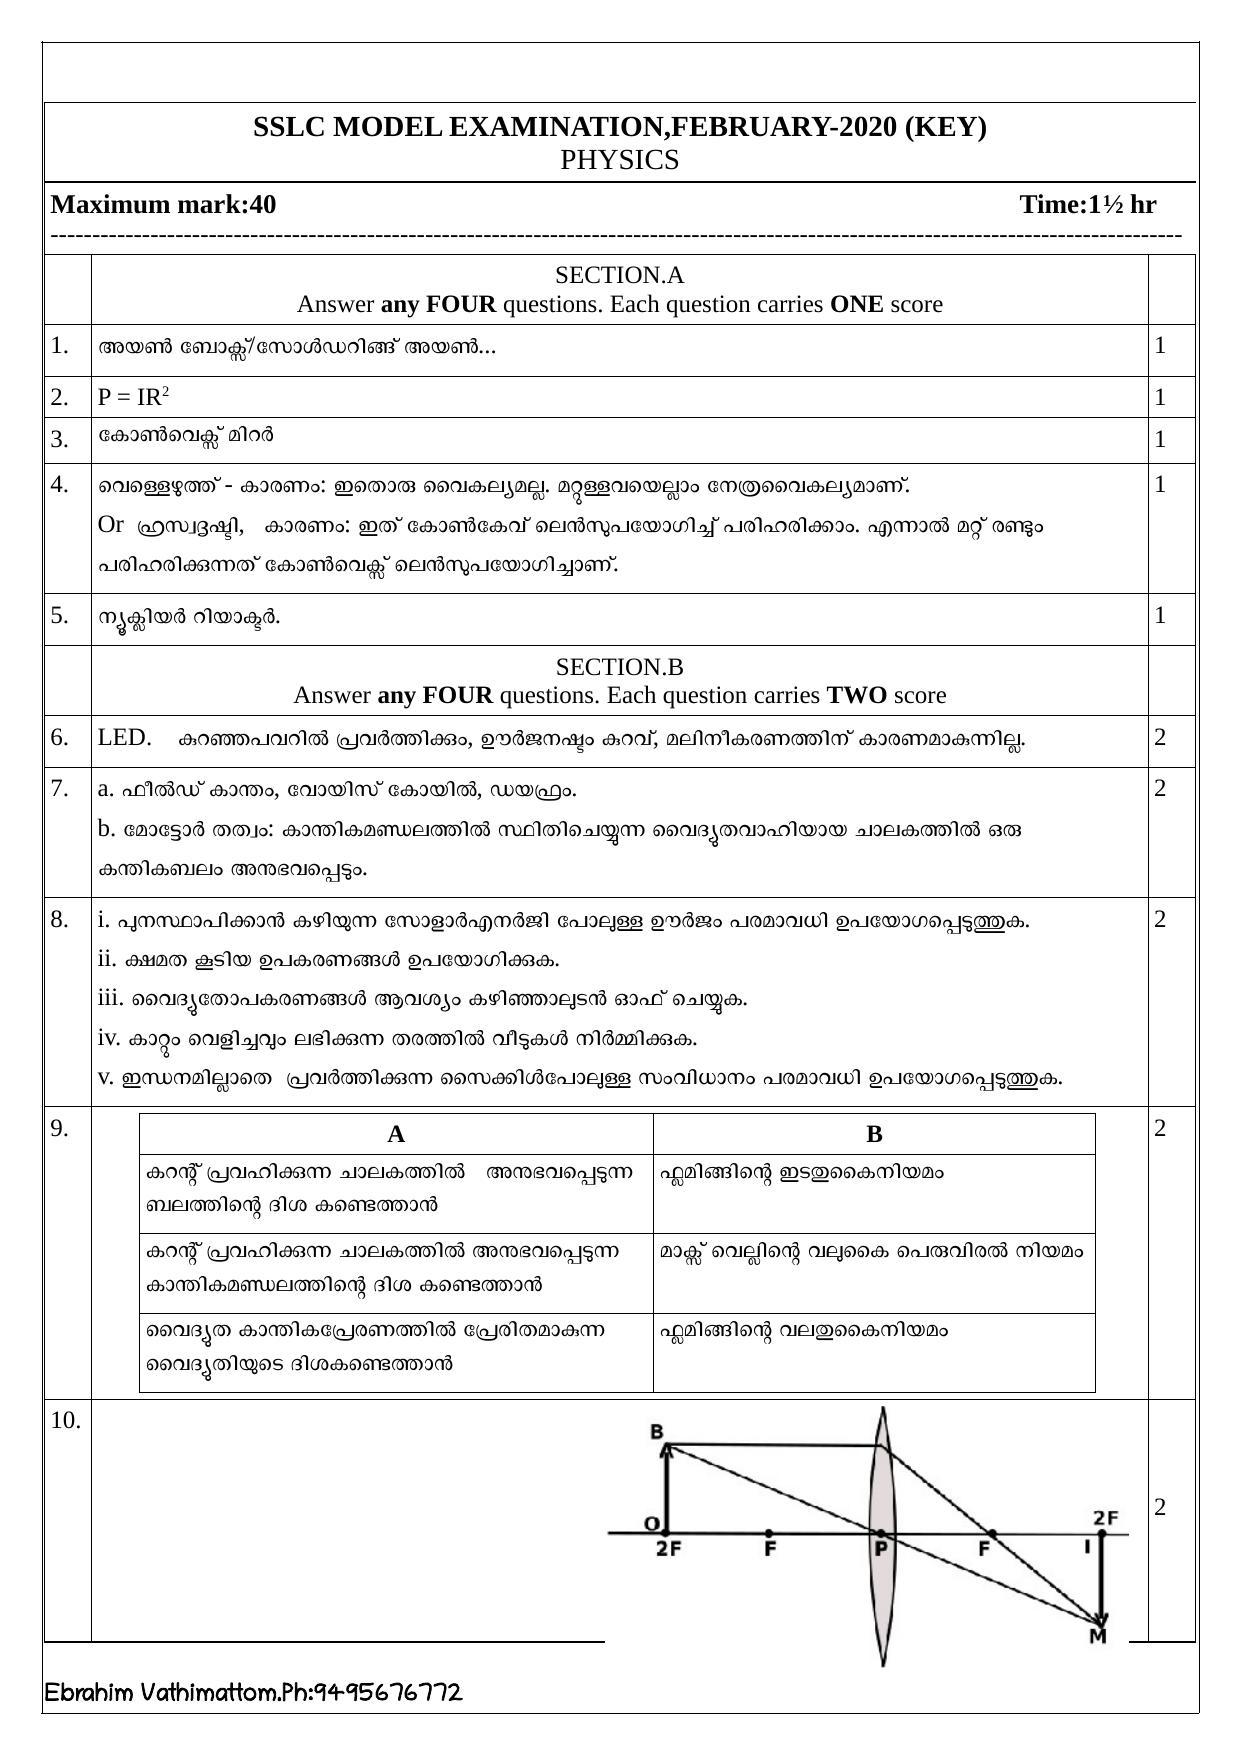 Kerala SSLC 2020 Physics Answer Key (MM) (Model) - Page 1